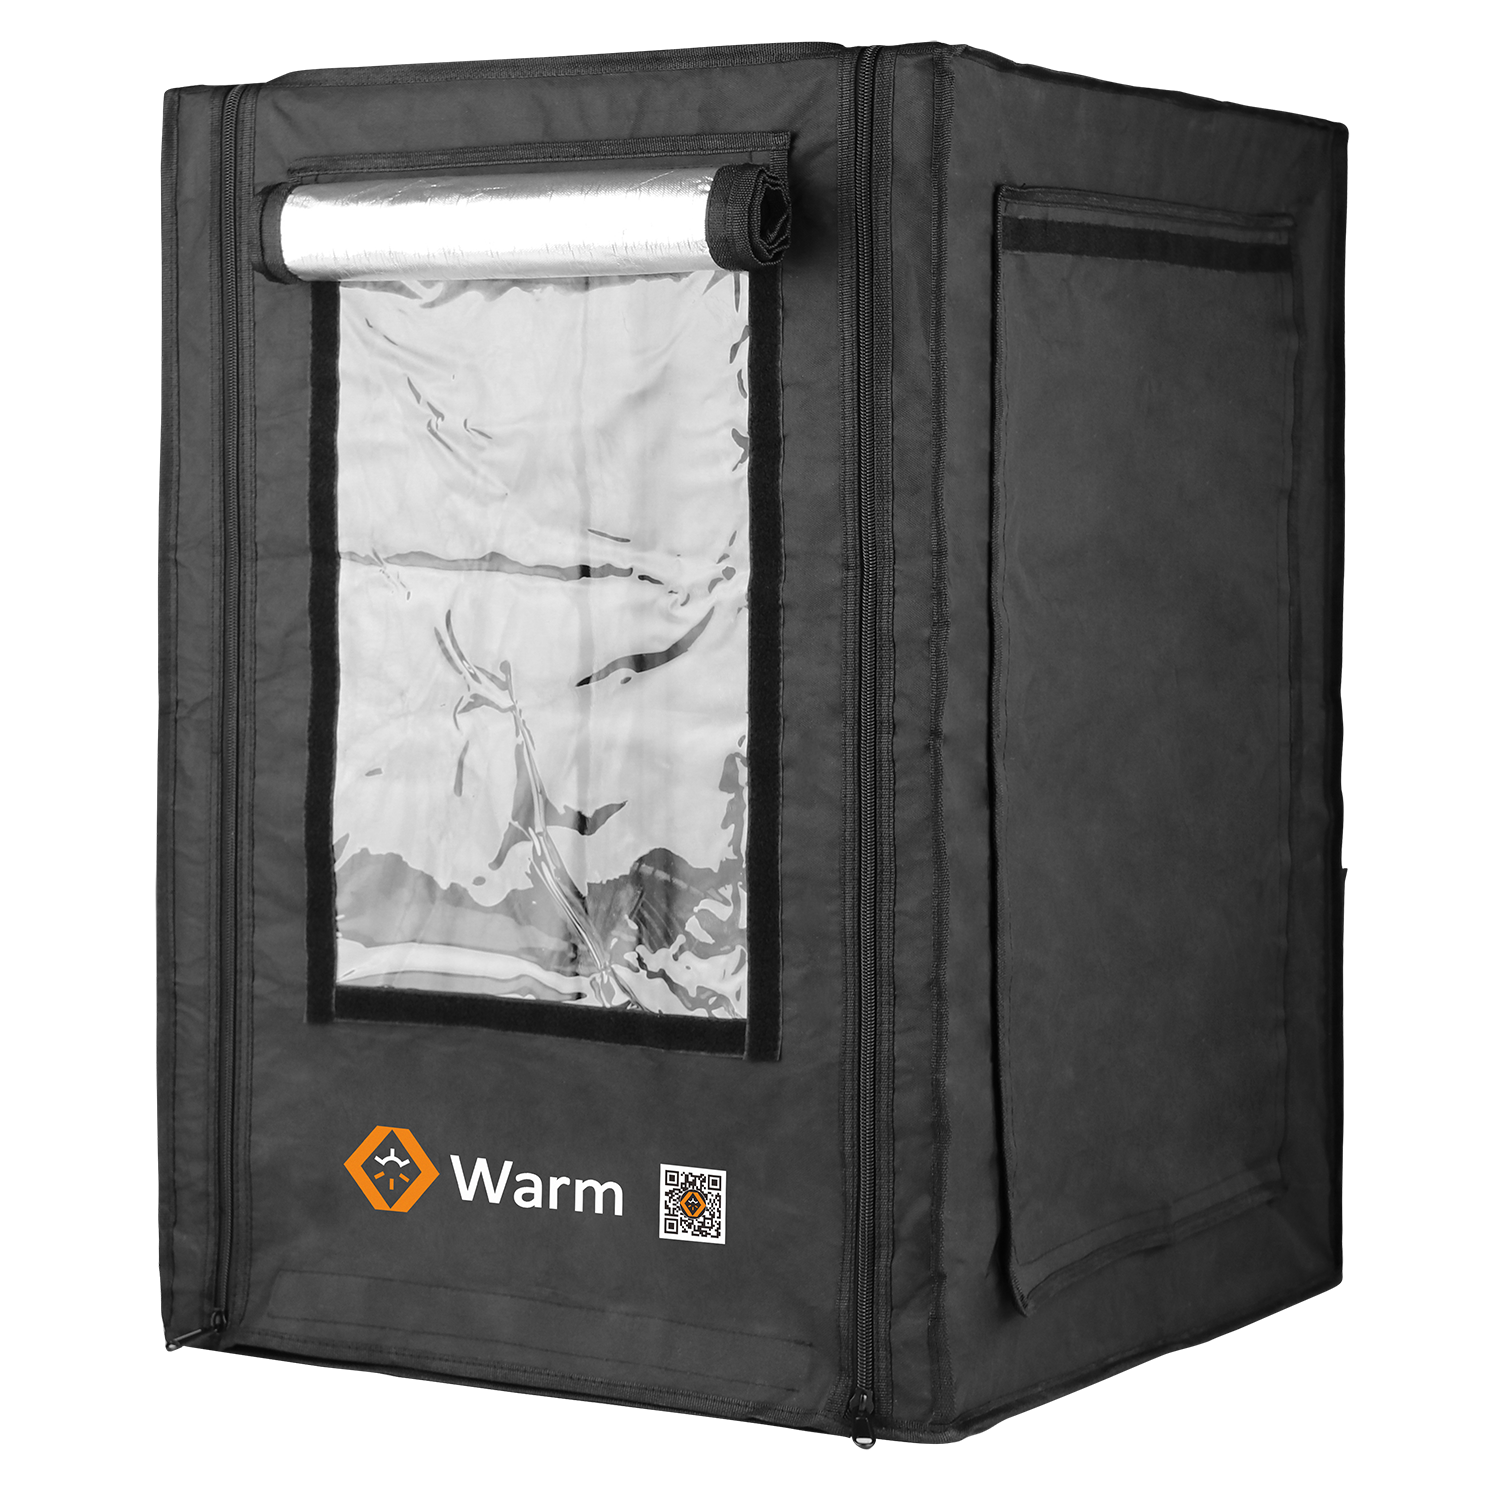 Gabinete de impresora 3D Pro, Keep Warm, retardante de llama, cobertura total y Studio, Warm Pro
